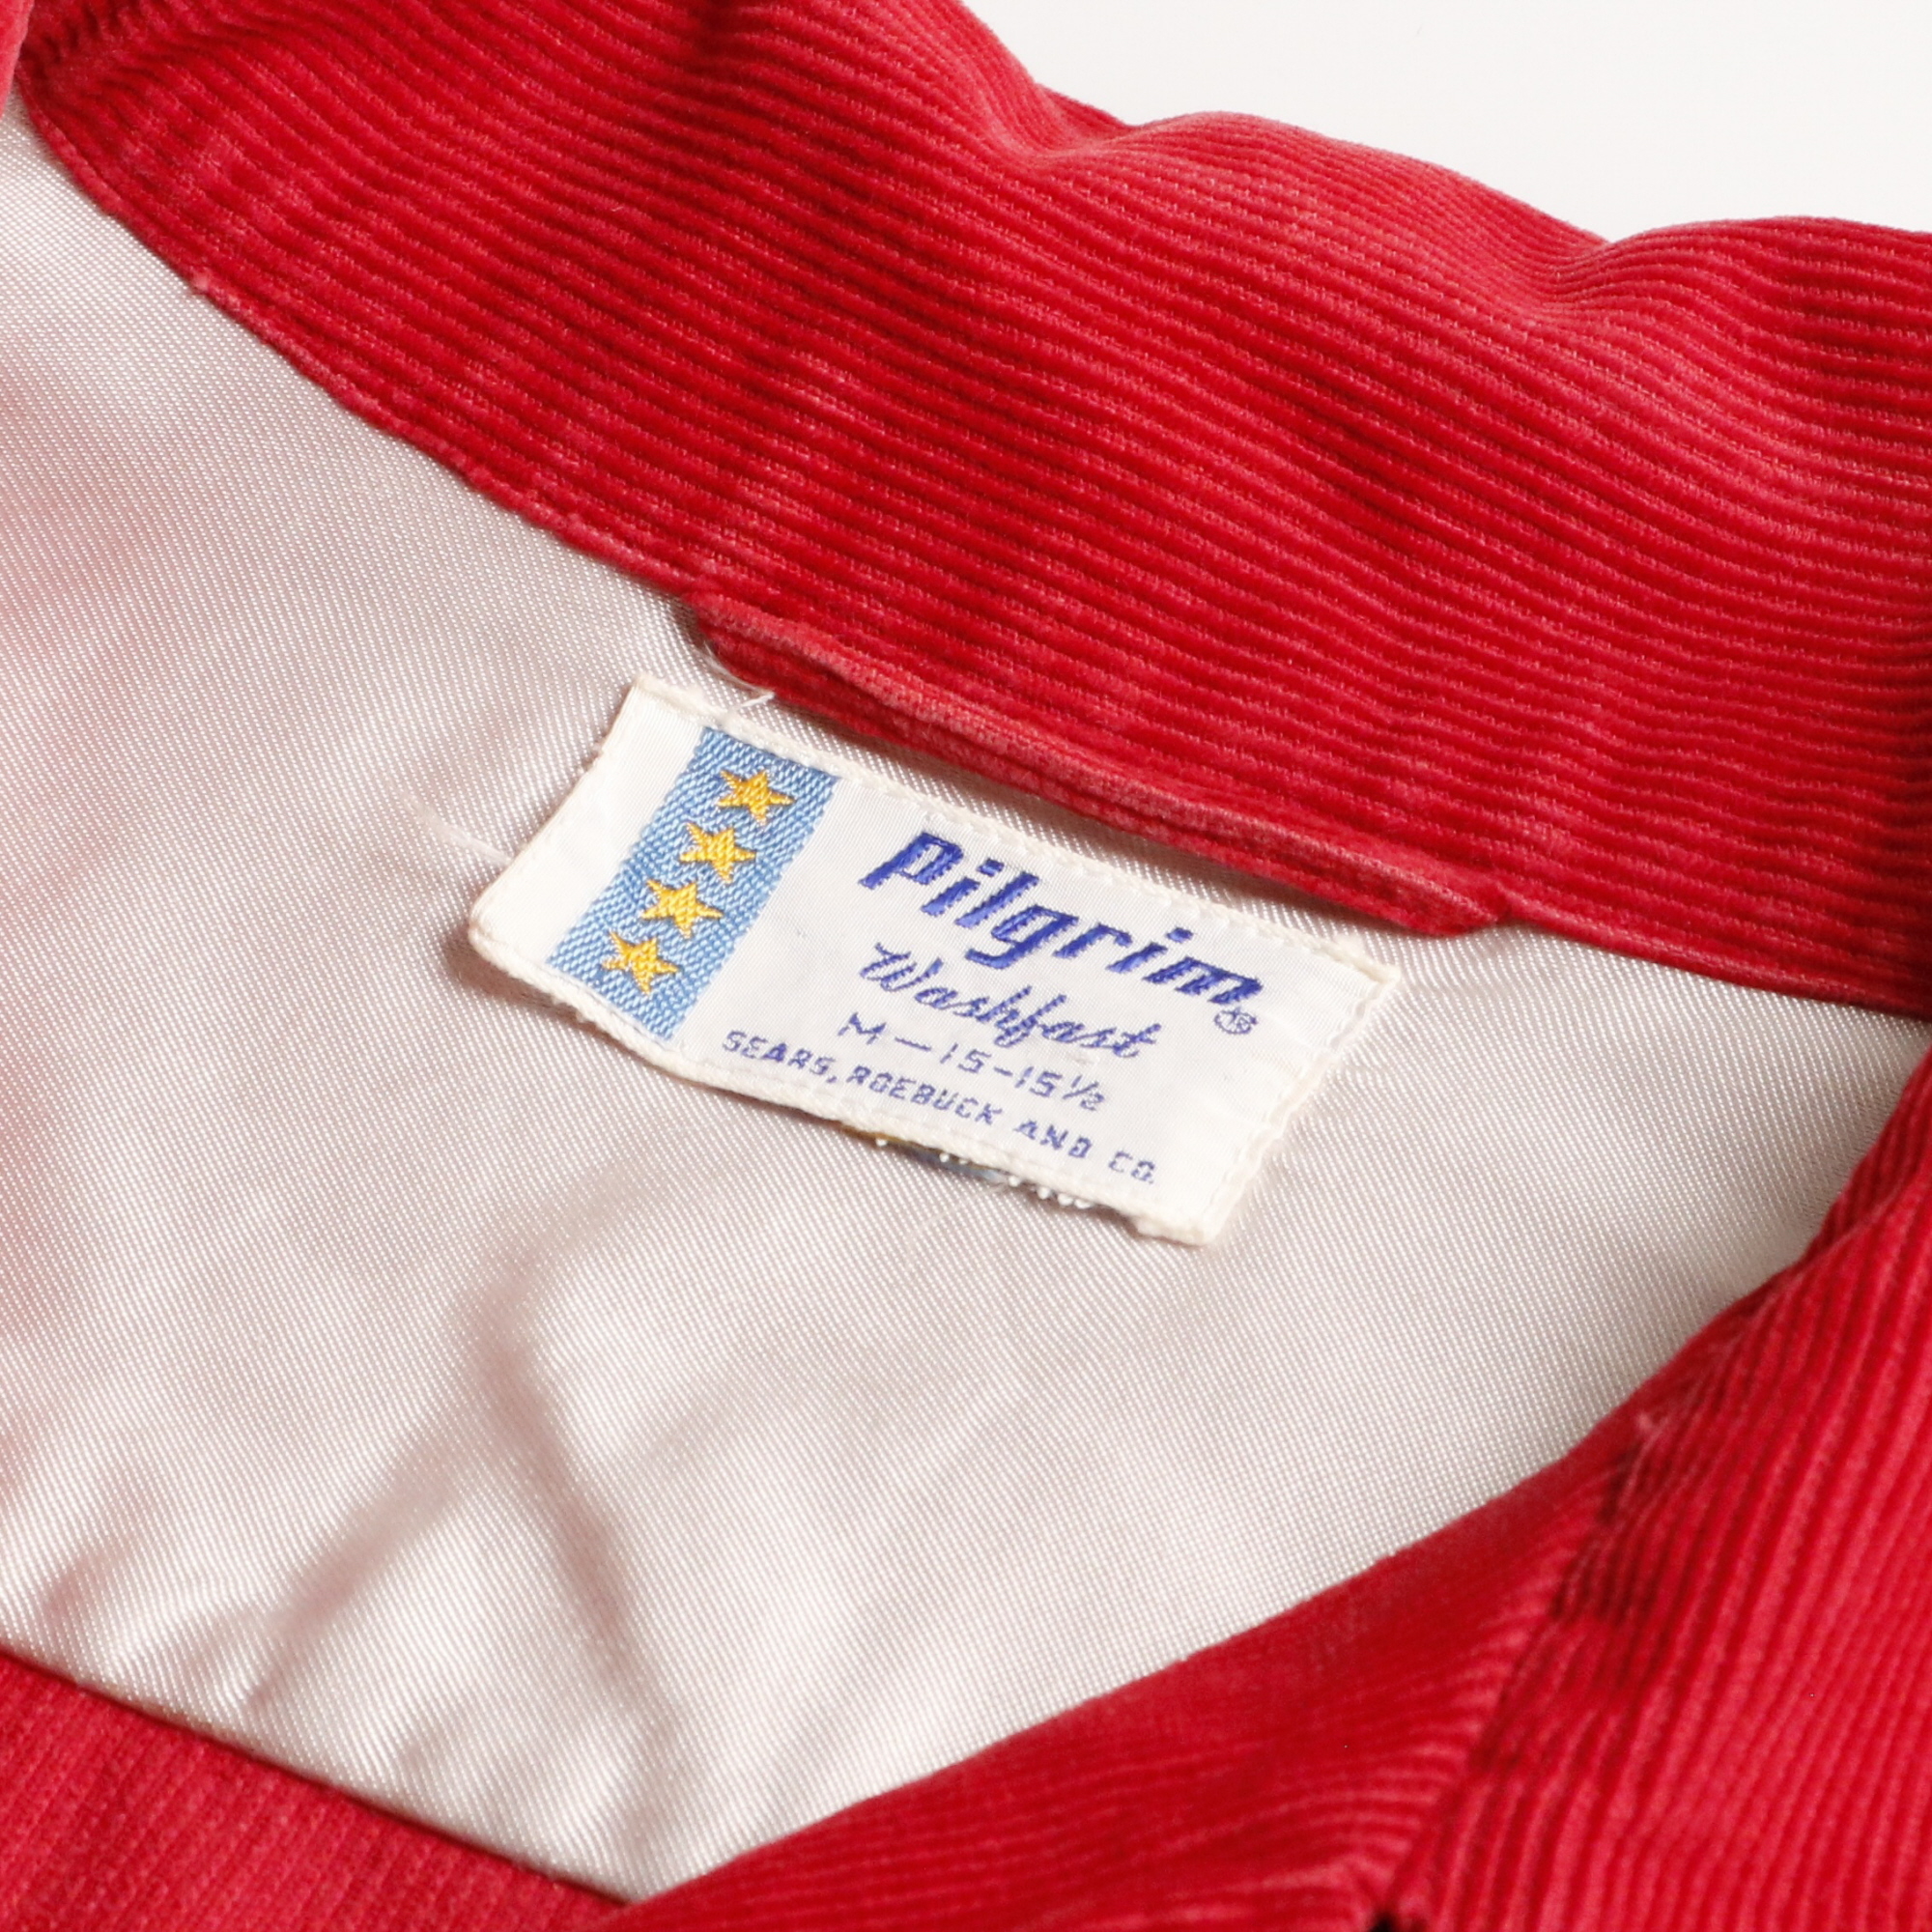 50s ヴィンテージ PILGRIM ピルグリム コーデュロイシャツ SEARS ROEBUCK シアーズ 袋襟 赤 M 15-15H